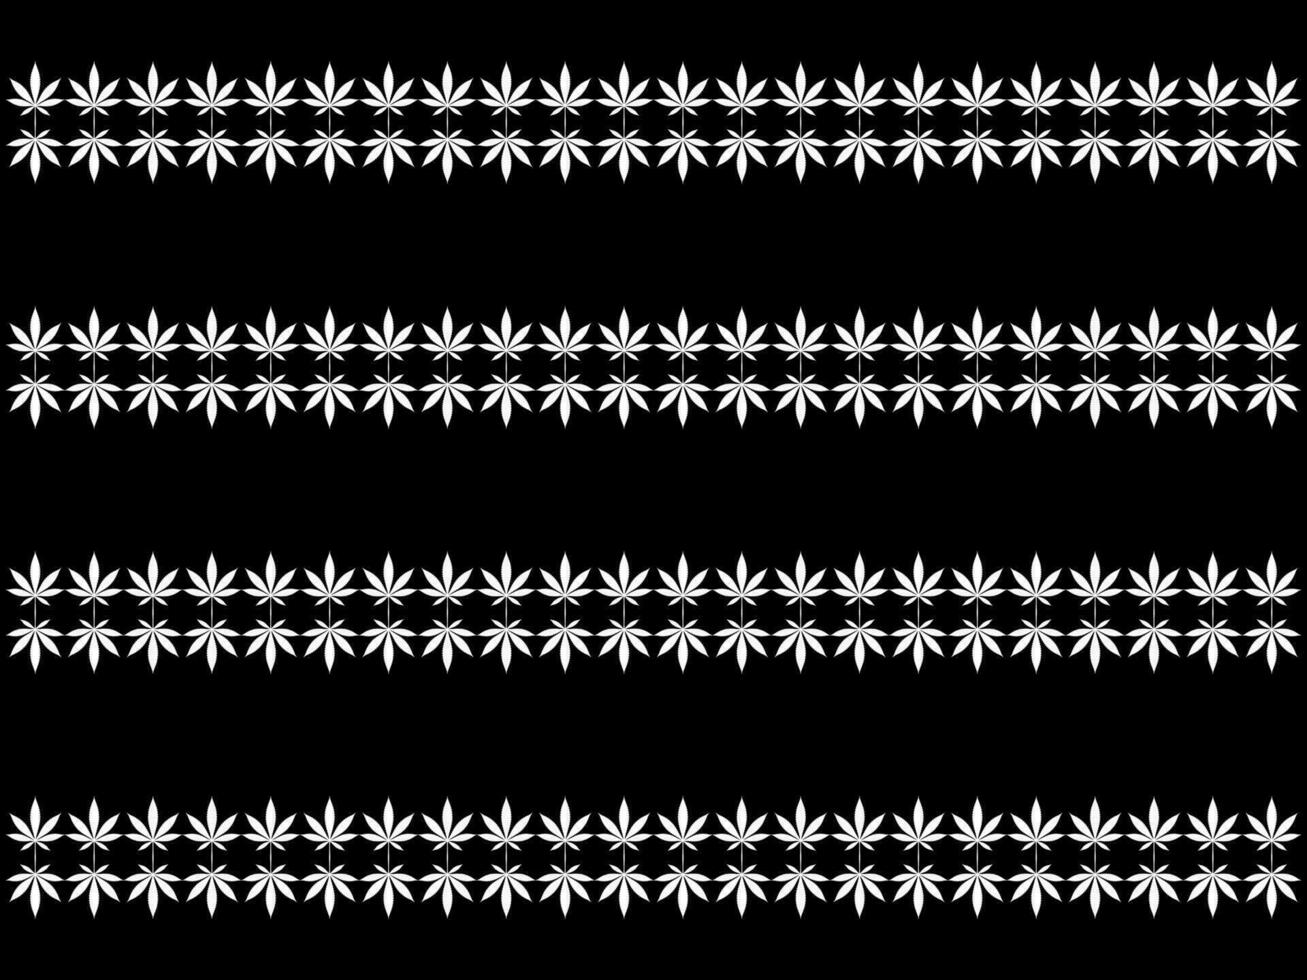 Cannabis ebenfalls bekannt wie Marihuana Blatt Silhouette Motive Muster, können verwenden zum Dekoration, aufwendig, Hintergrund, Hintergrund, Textil. Mode, Stoff, Fliese, Boden, Abdeckung, Verpackung, ect. Vektor Illustration